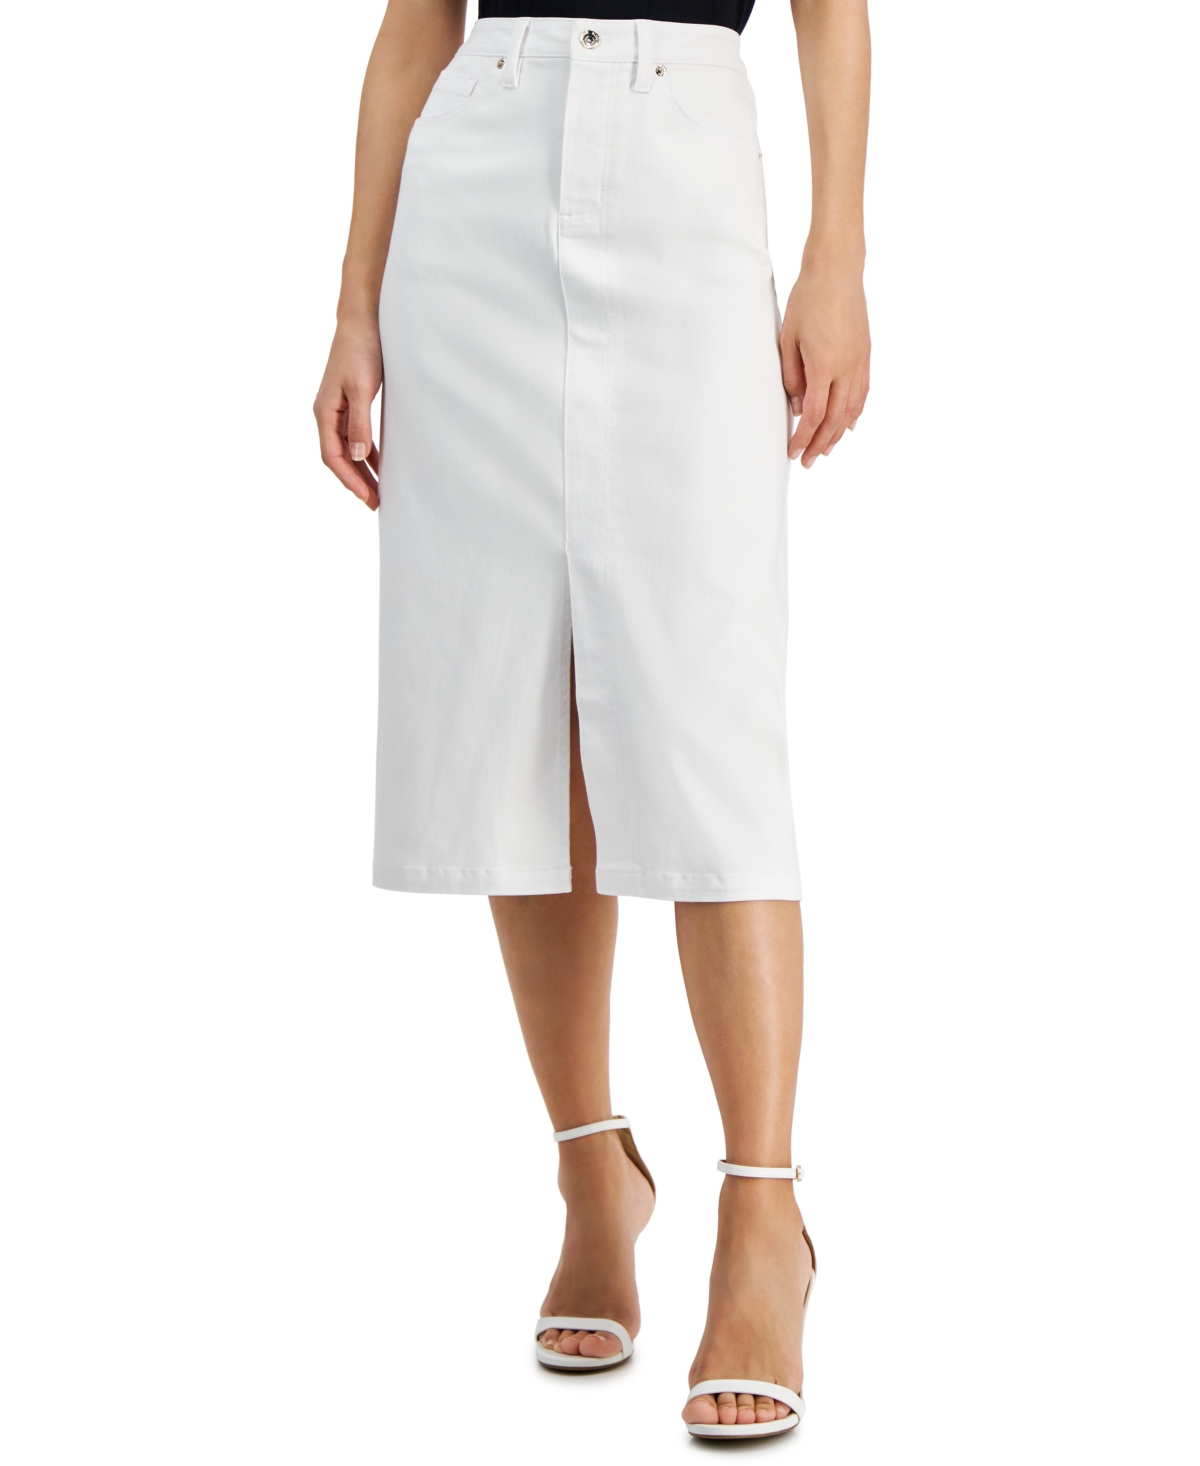 Women's Midi Pencil Skirt - Soft White